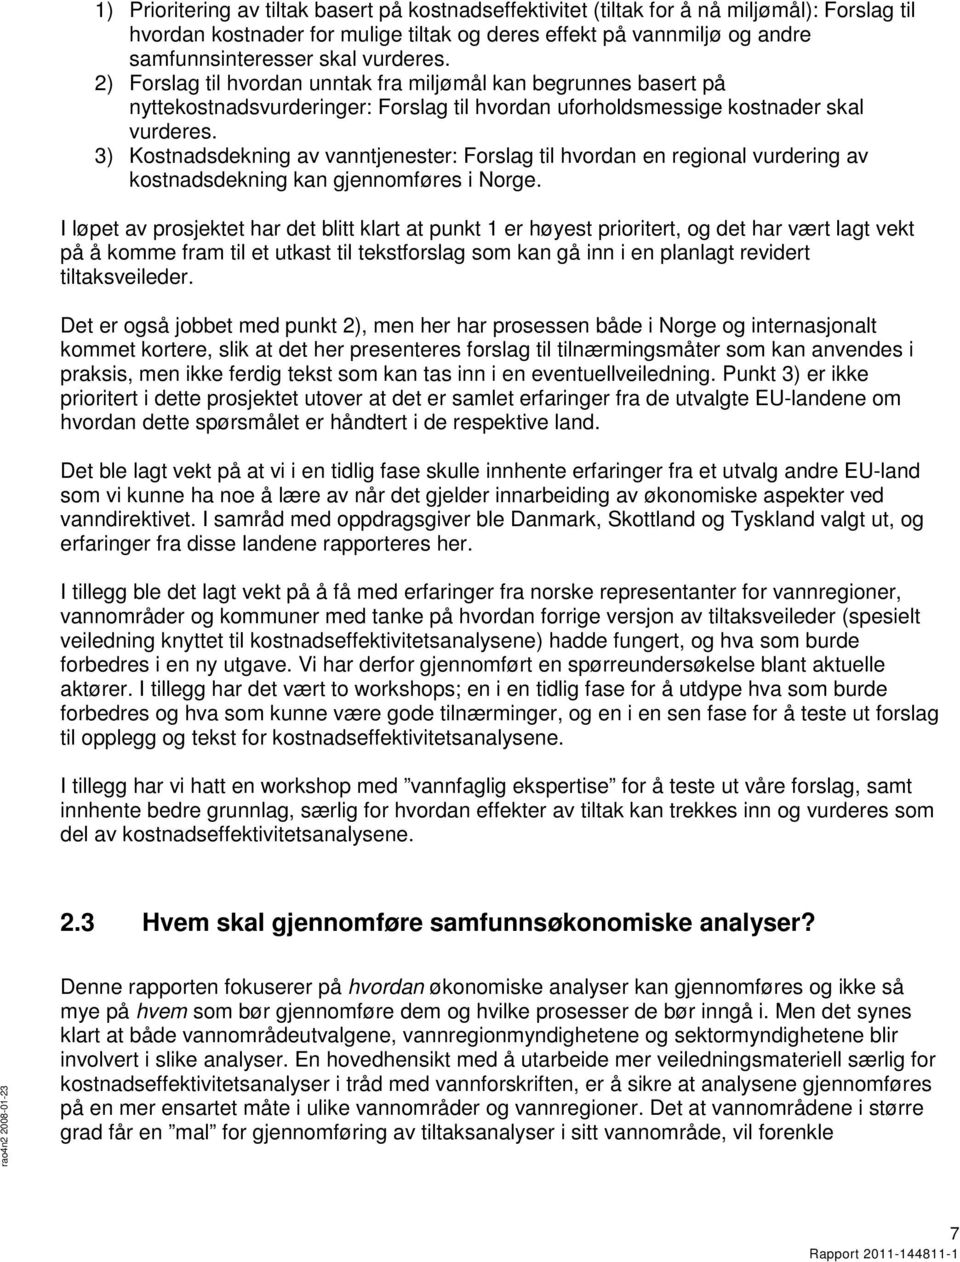 3) Kostnadsdekning av vanntjenester: Forslag til hvordan en regional vurdering av kostnadsdekning kan gjennomføres i Norge.